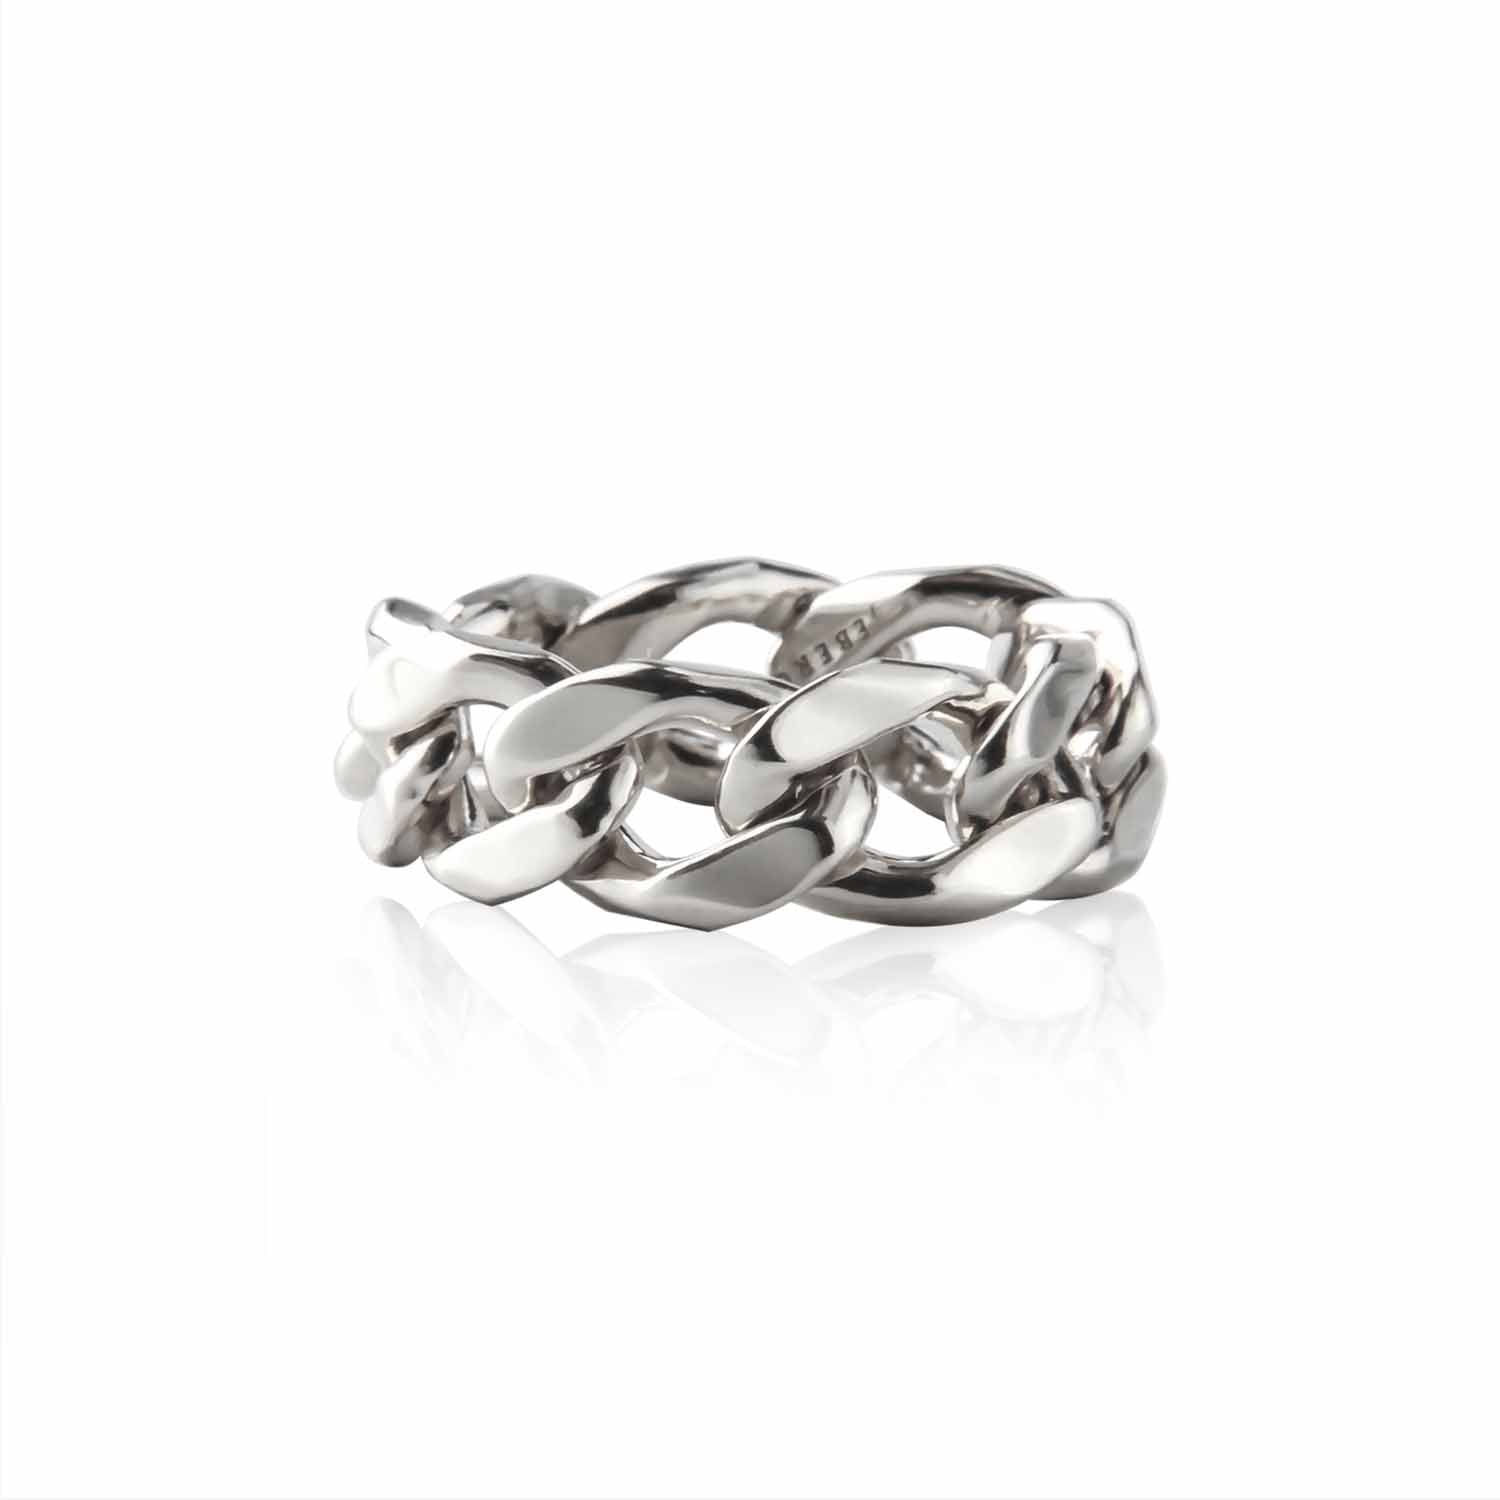 Billede af Jeberg Jewellery - Chain ring sølv sterlingsølv